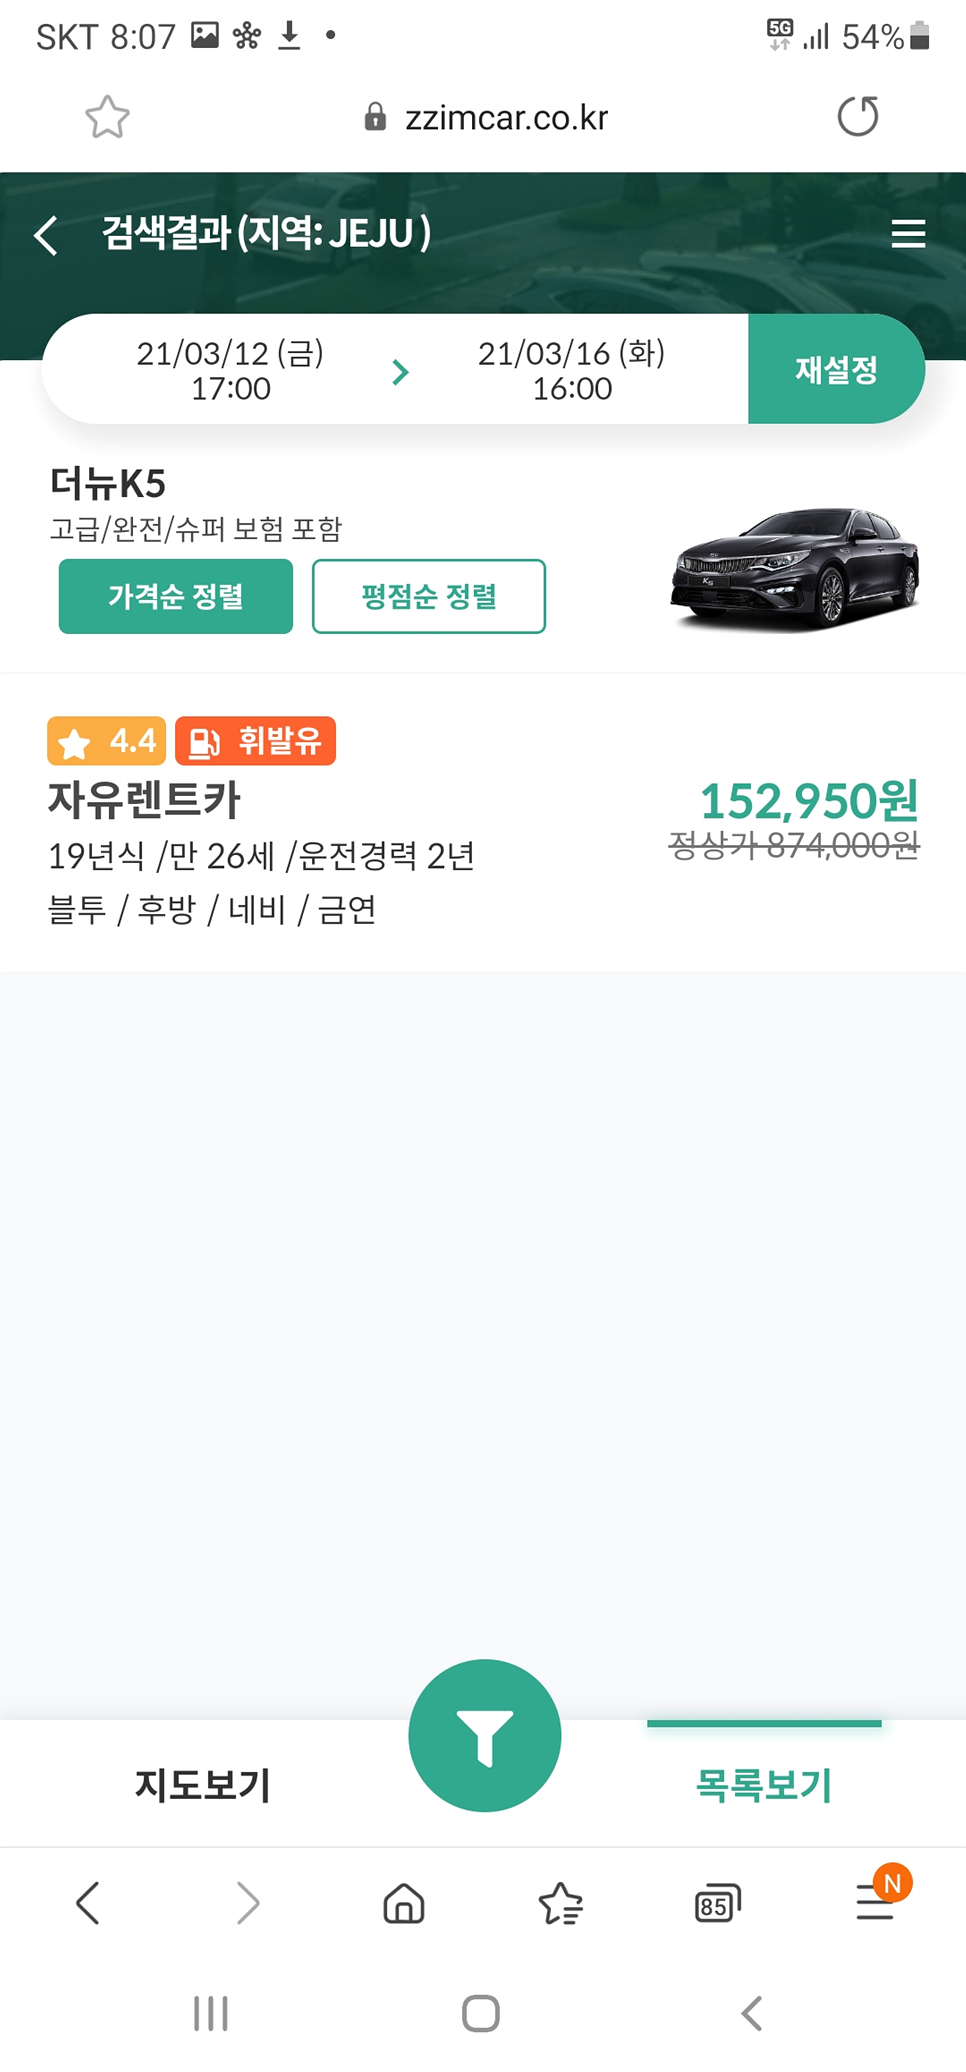 제주도 렌터카 찜카 15%할인후기(feat. 야놀자)